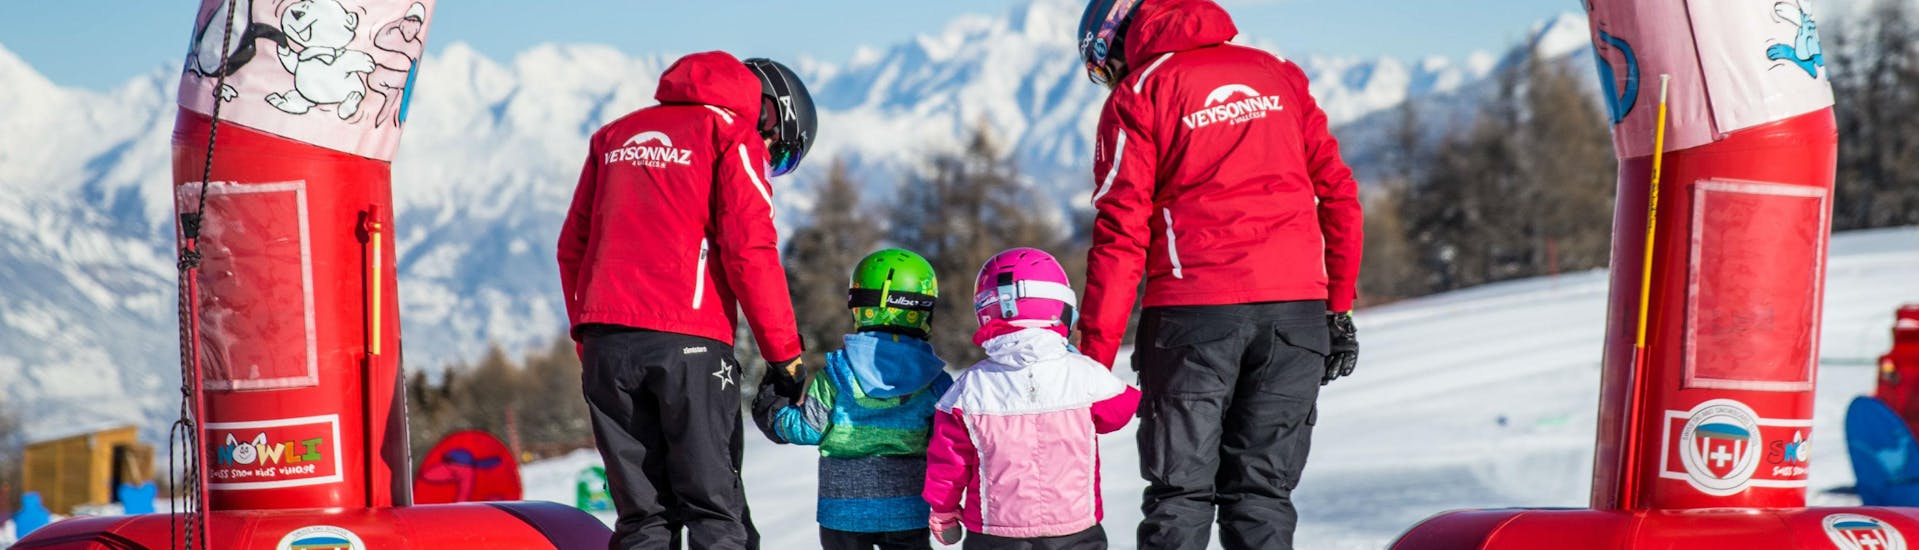 Kids Ski Lessons (3-5 y.) - Full Day with Swiss Ski School Veysonnaz - Hero image